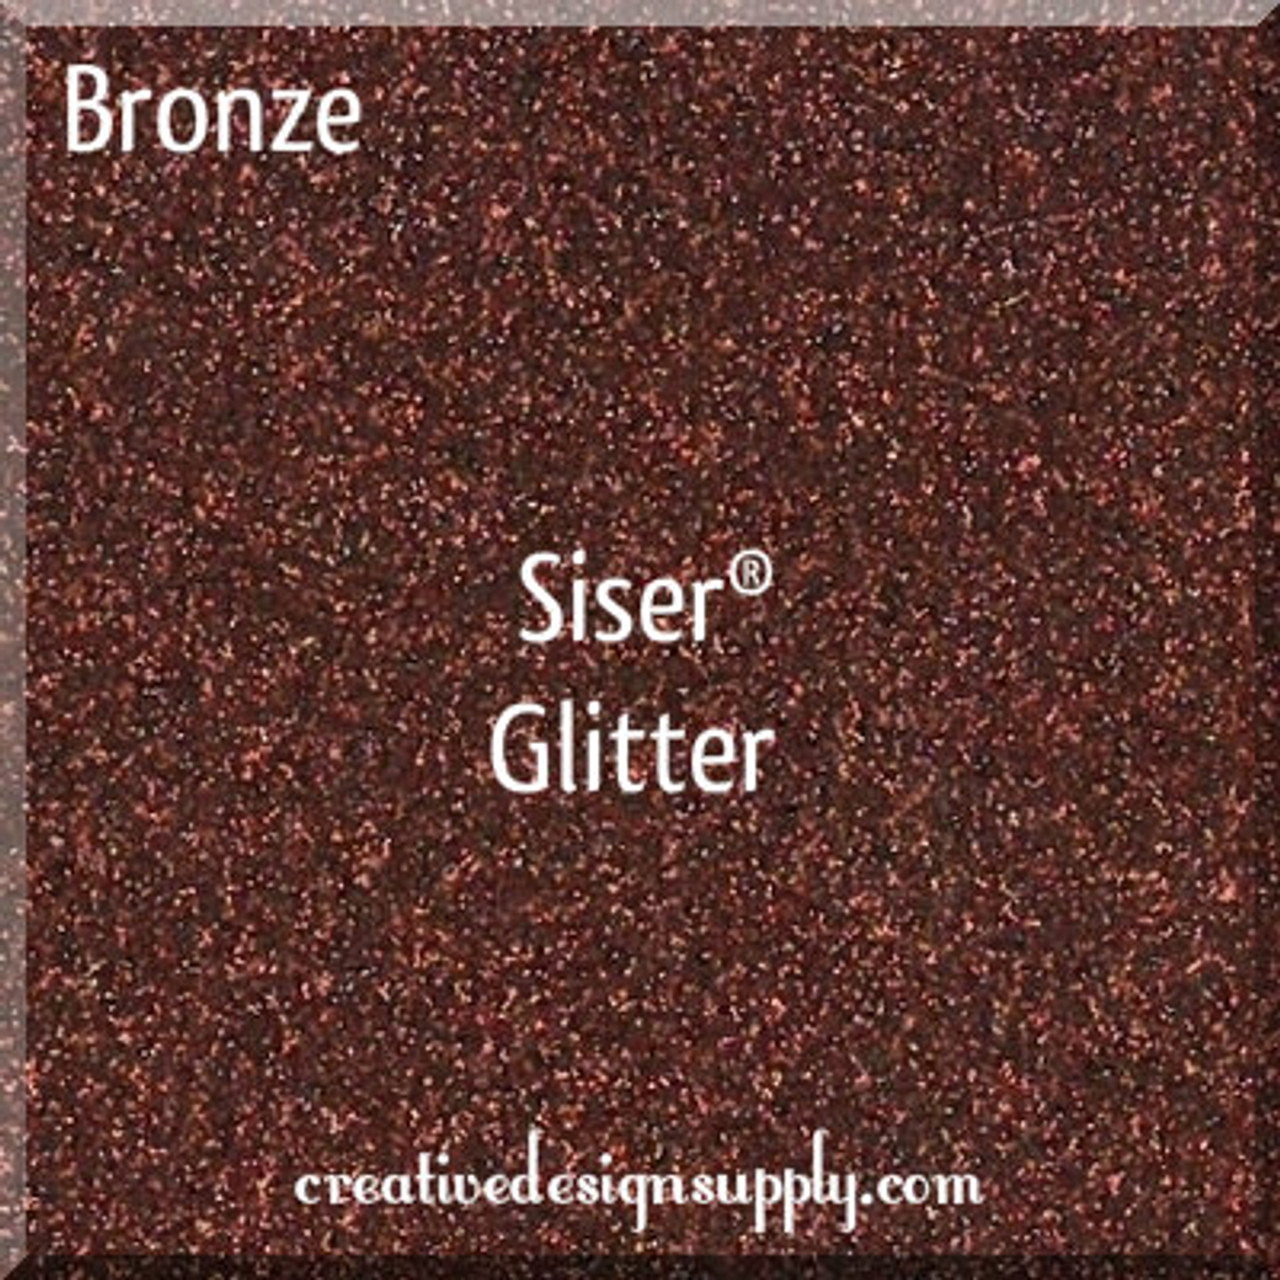 Bronze Siser Glitter 20"